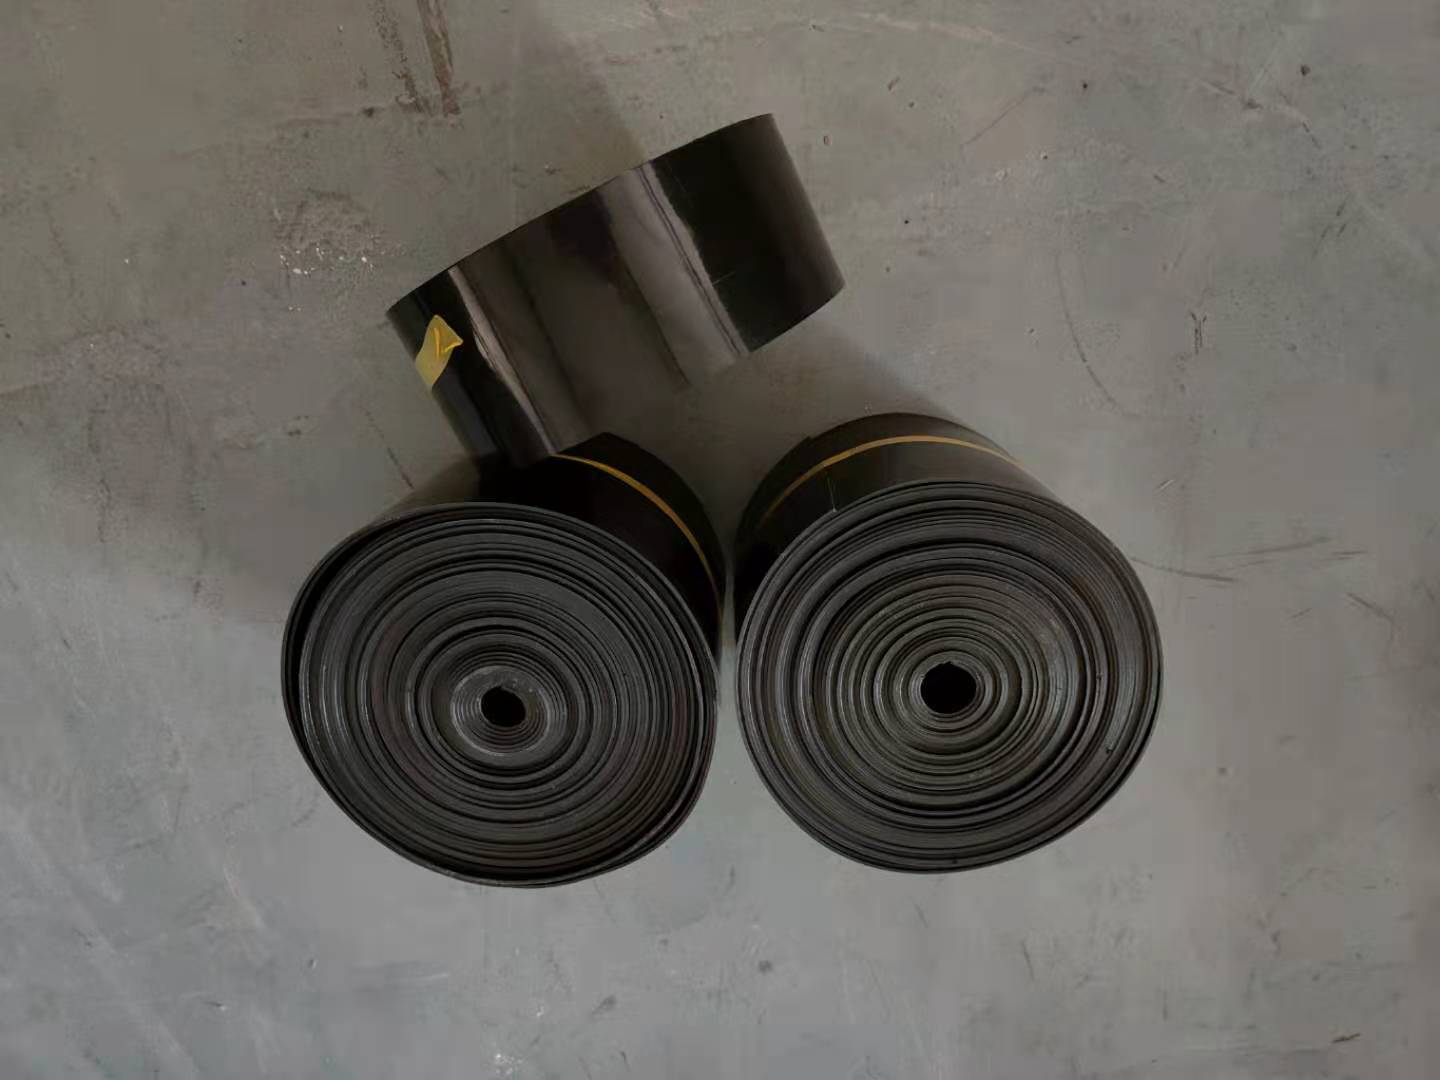 聚乙烯热缩带生产厂家 钢质管道防腐热缩缠绕带厂家批发 缠绕带型号